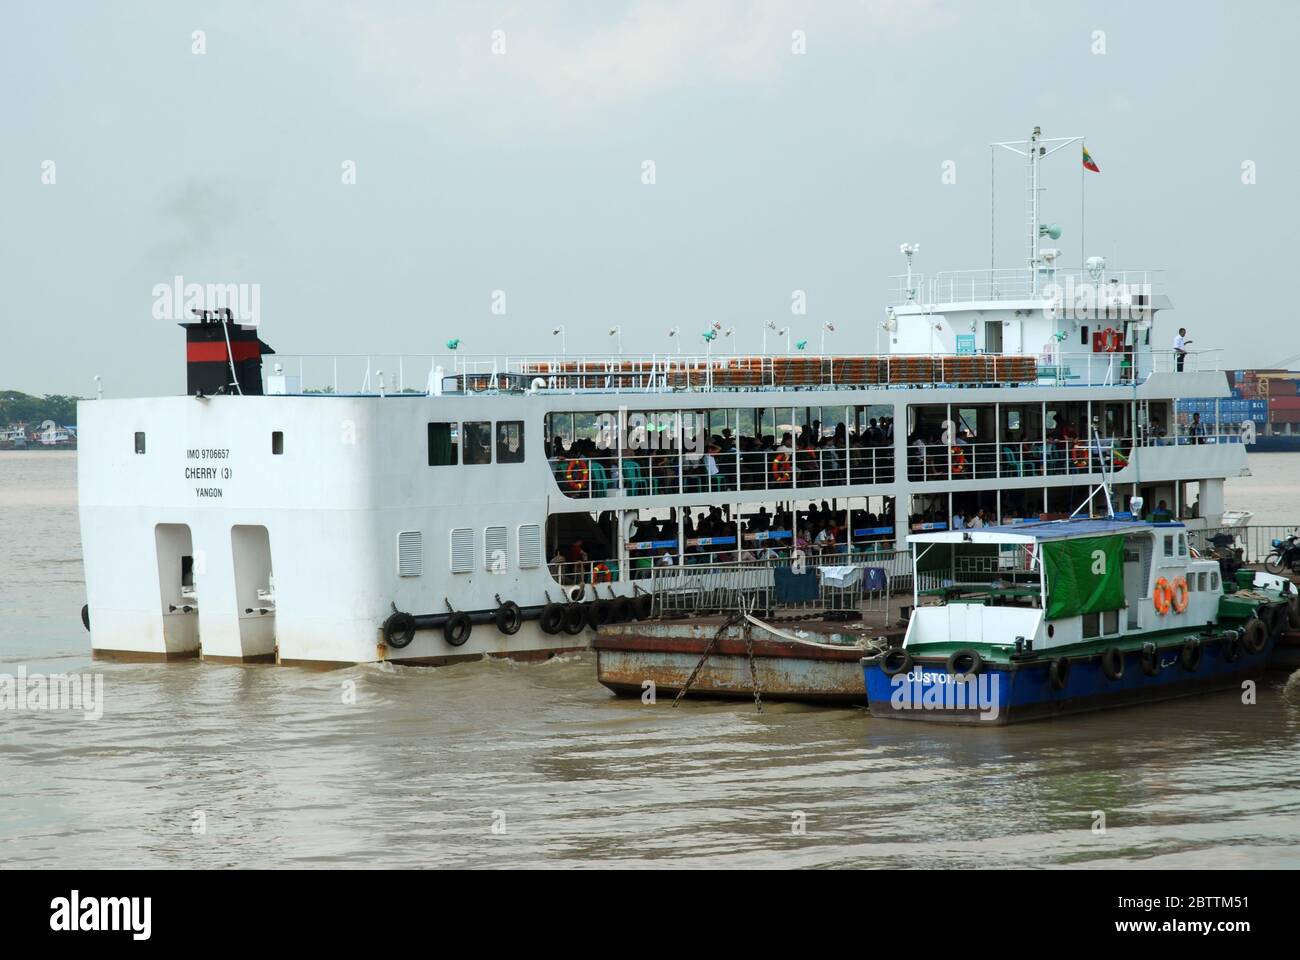 Eine Passagierfähre, die nach einer Fahrt über den Yangon-Fluss, Yangon, Myanmar, Asien am Pansodan-Fährterminal von Dala ankommt. Stockfoto